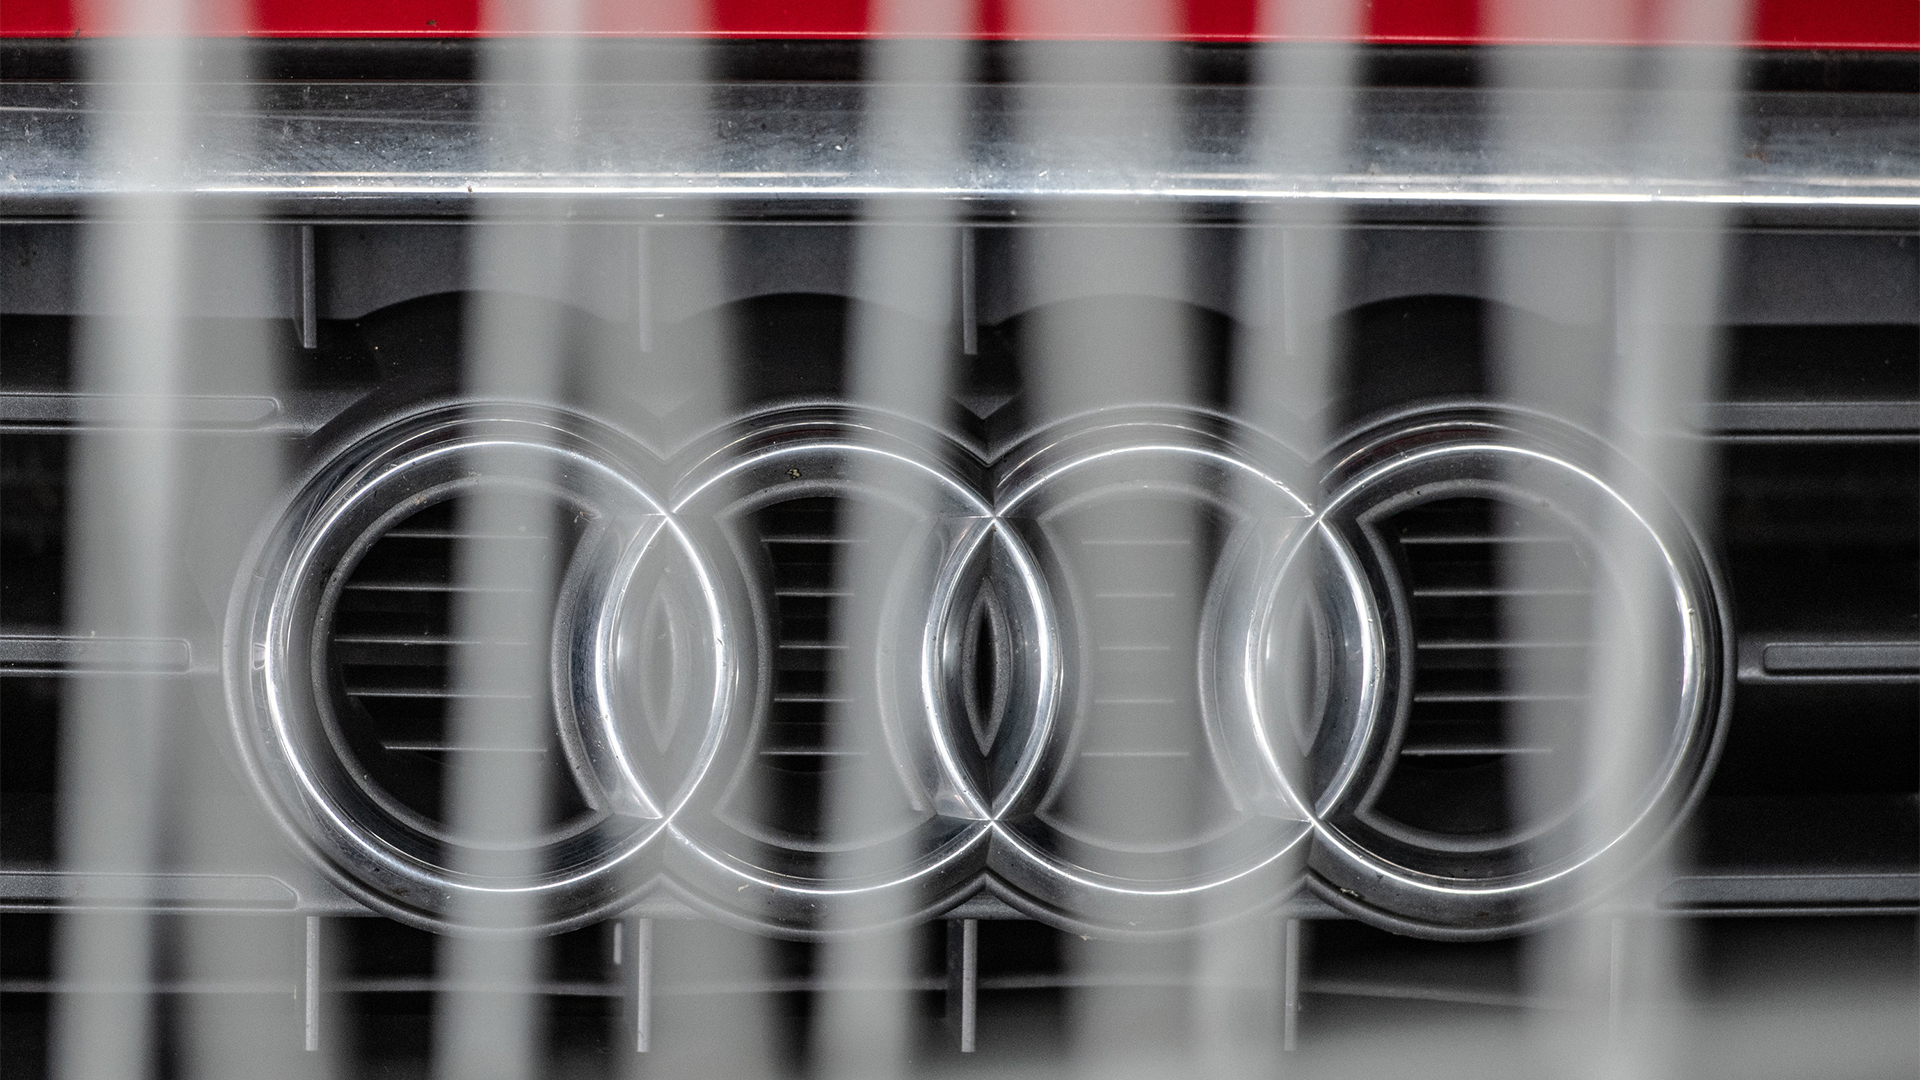 Dieselaffäre Audi Zahlt 800 Millionen Euro Bußgeld Metatagesschaude